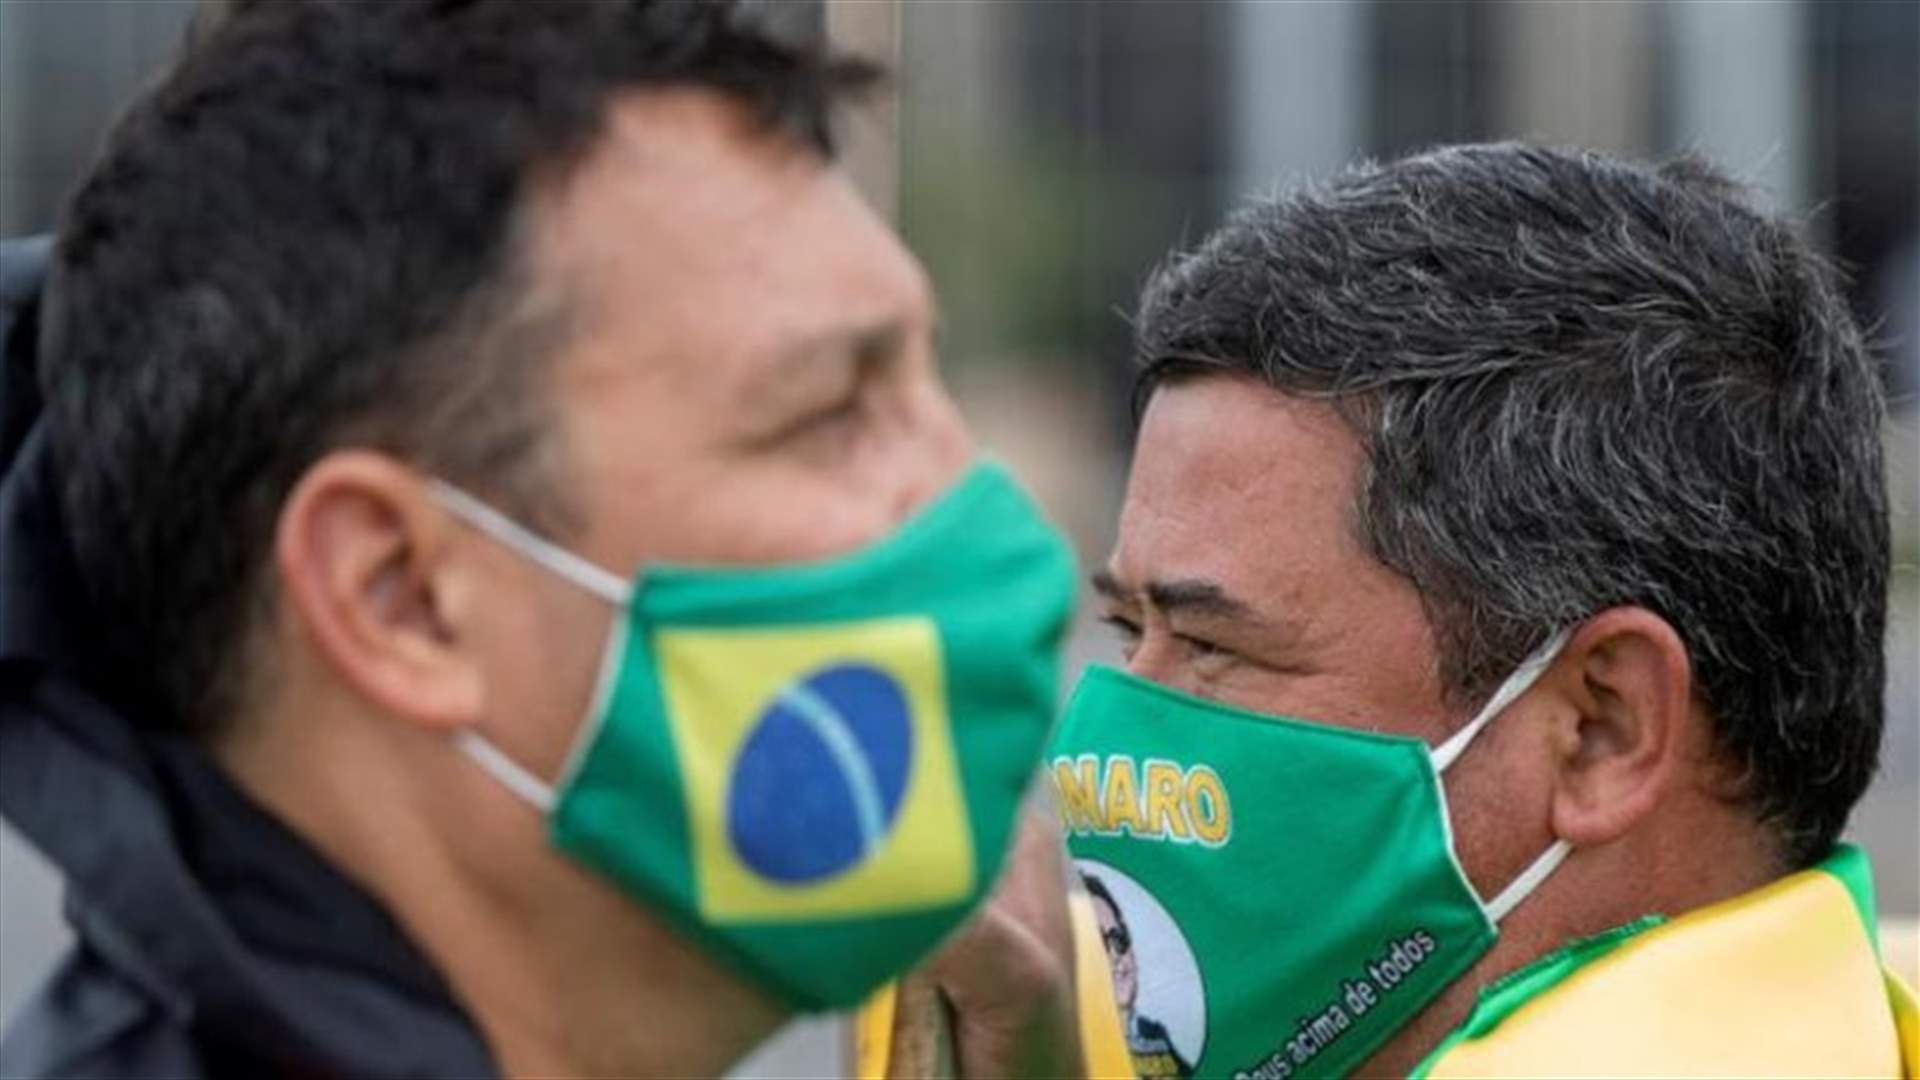 محصلة ضحايا فيروس كورونا في البرازيل تتخطى 30 ألف وفاة